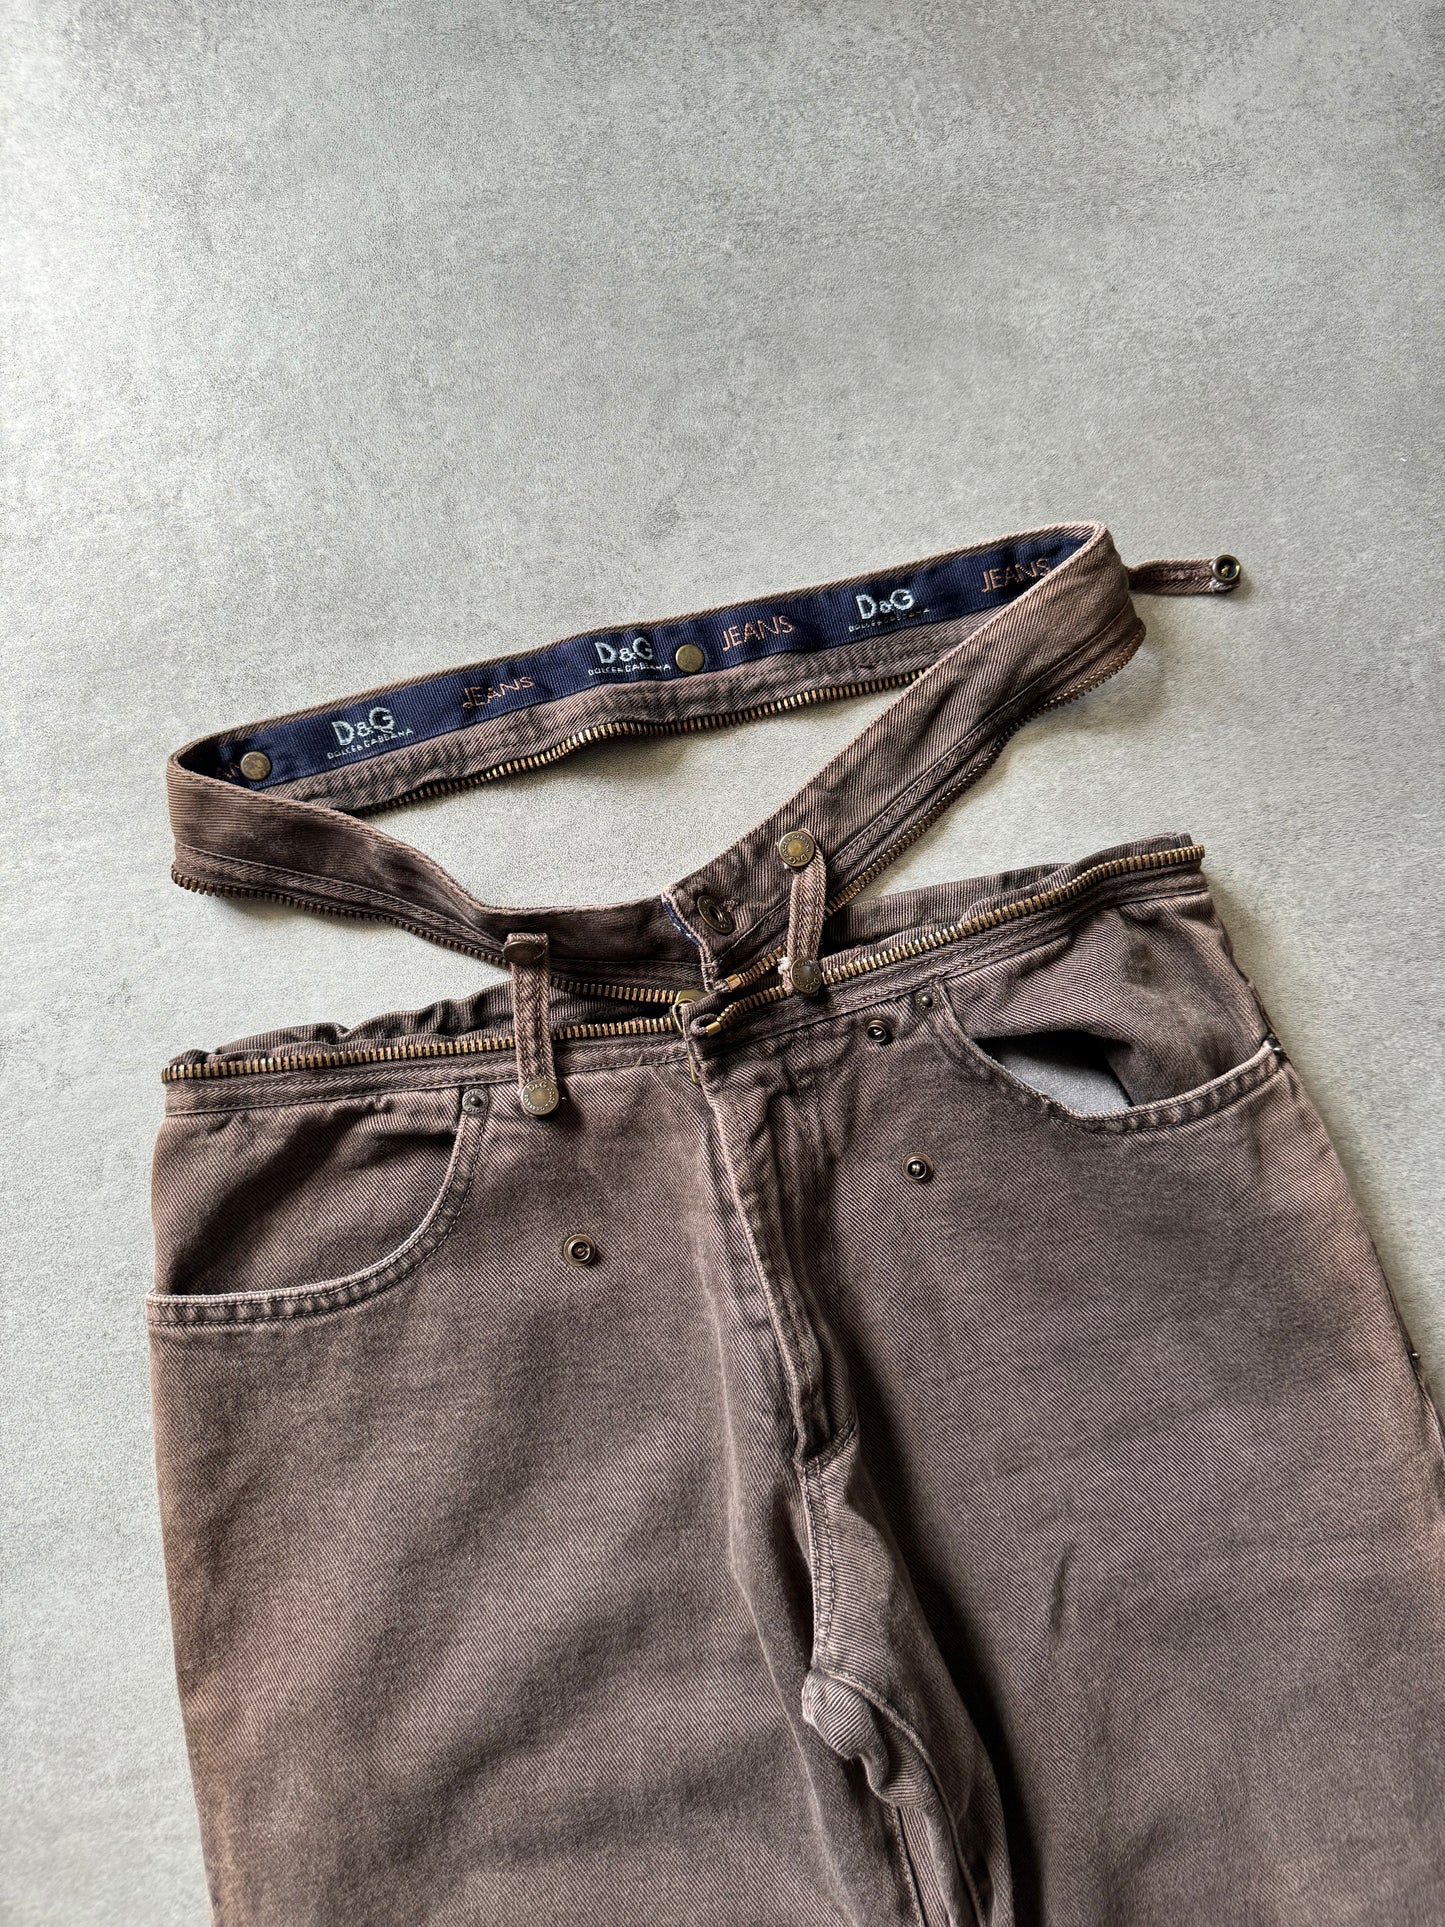 AW2003 Dolce & Gabbana Brown Zipped Pants (M) - 6